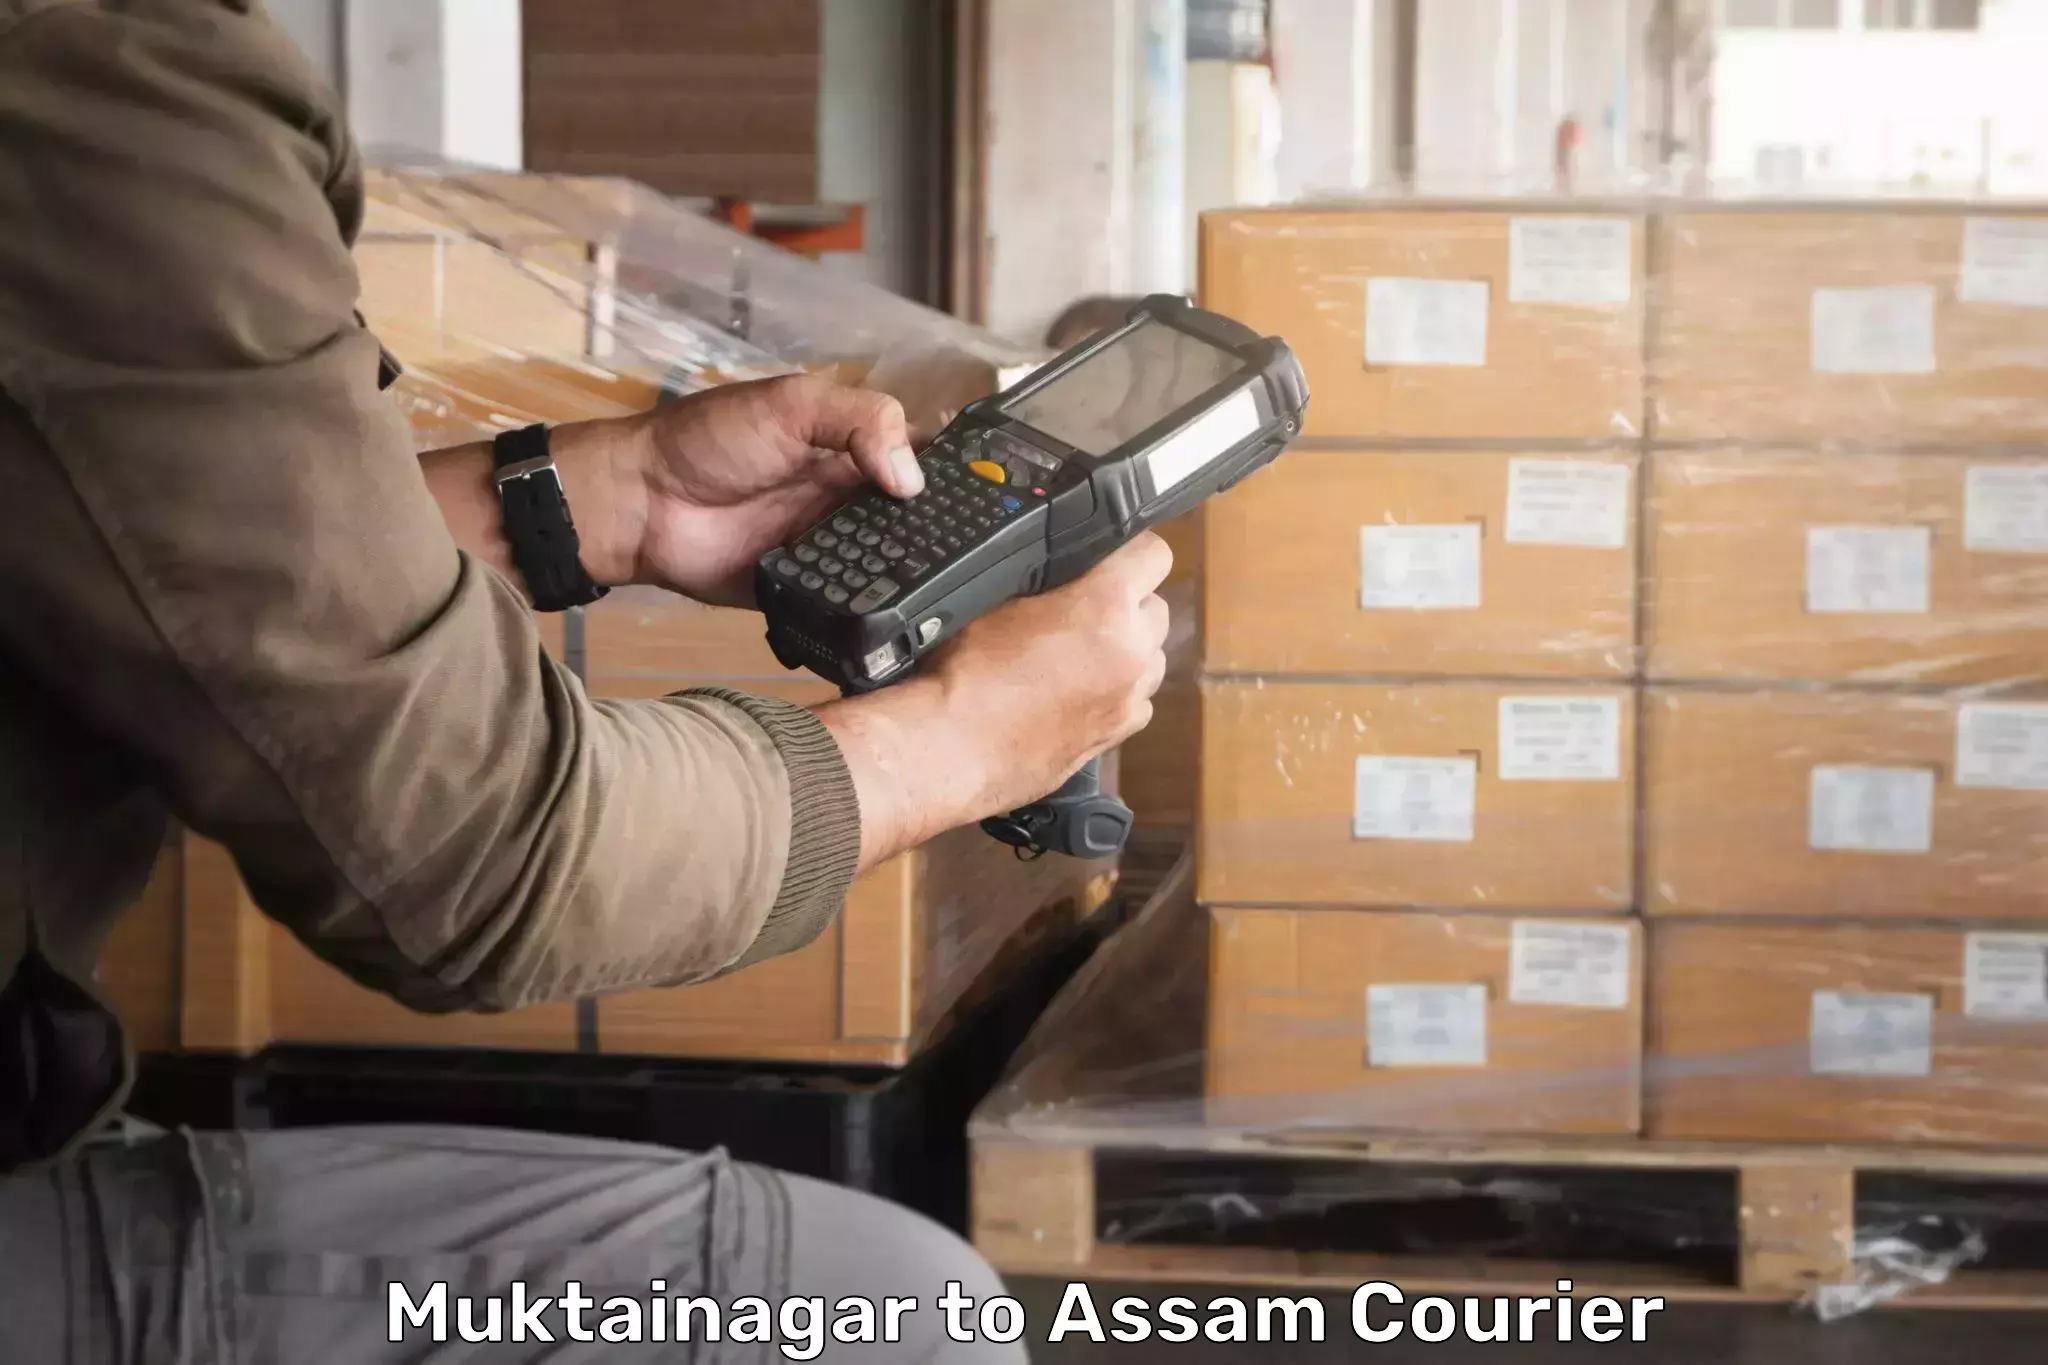 Courier service comparison Muktainagar to Bokolia